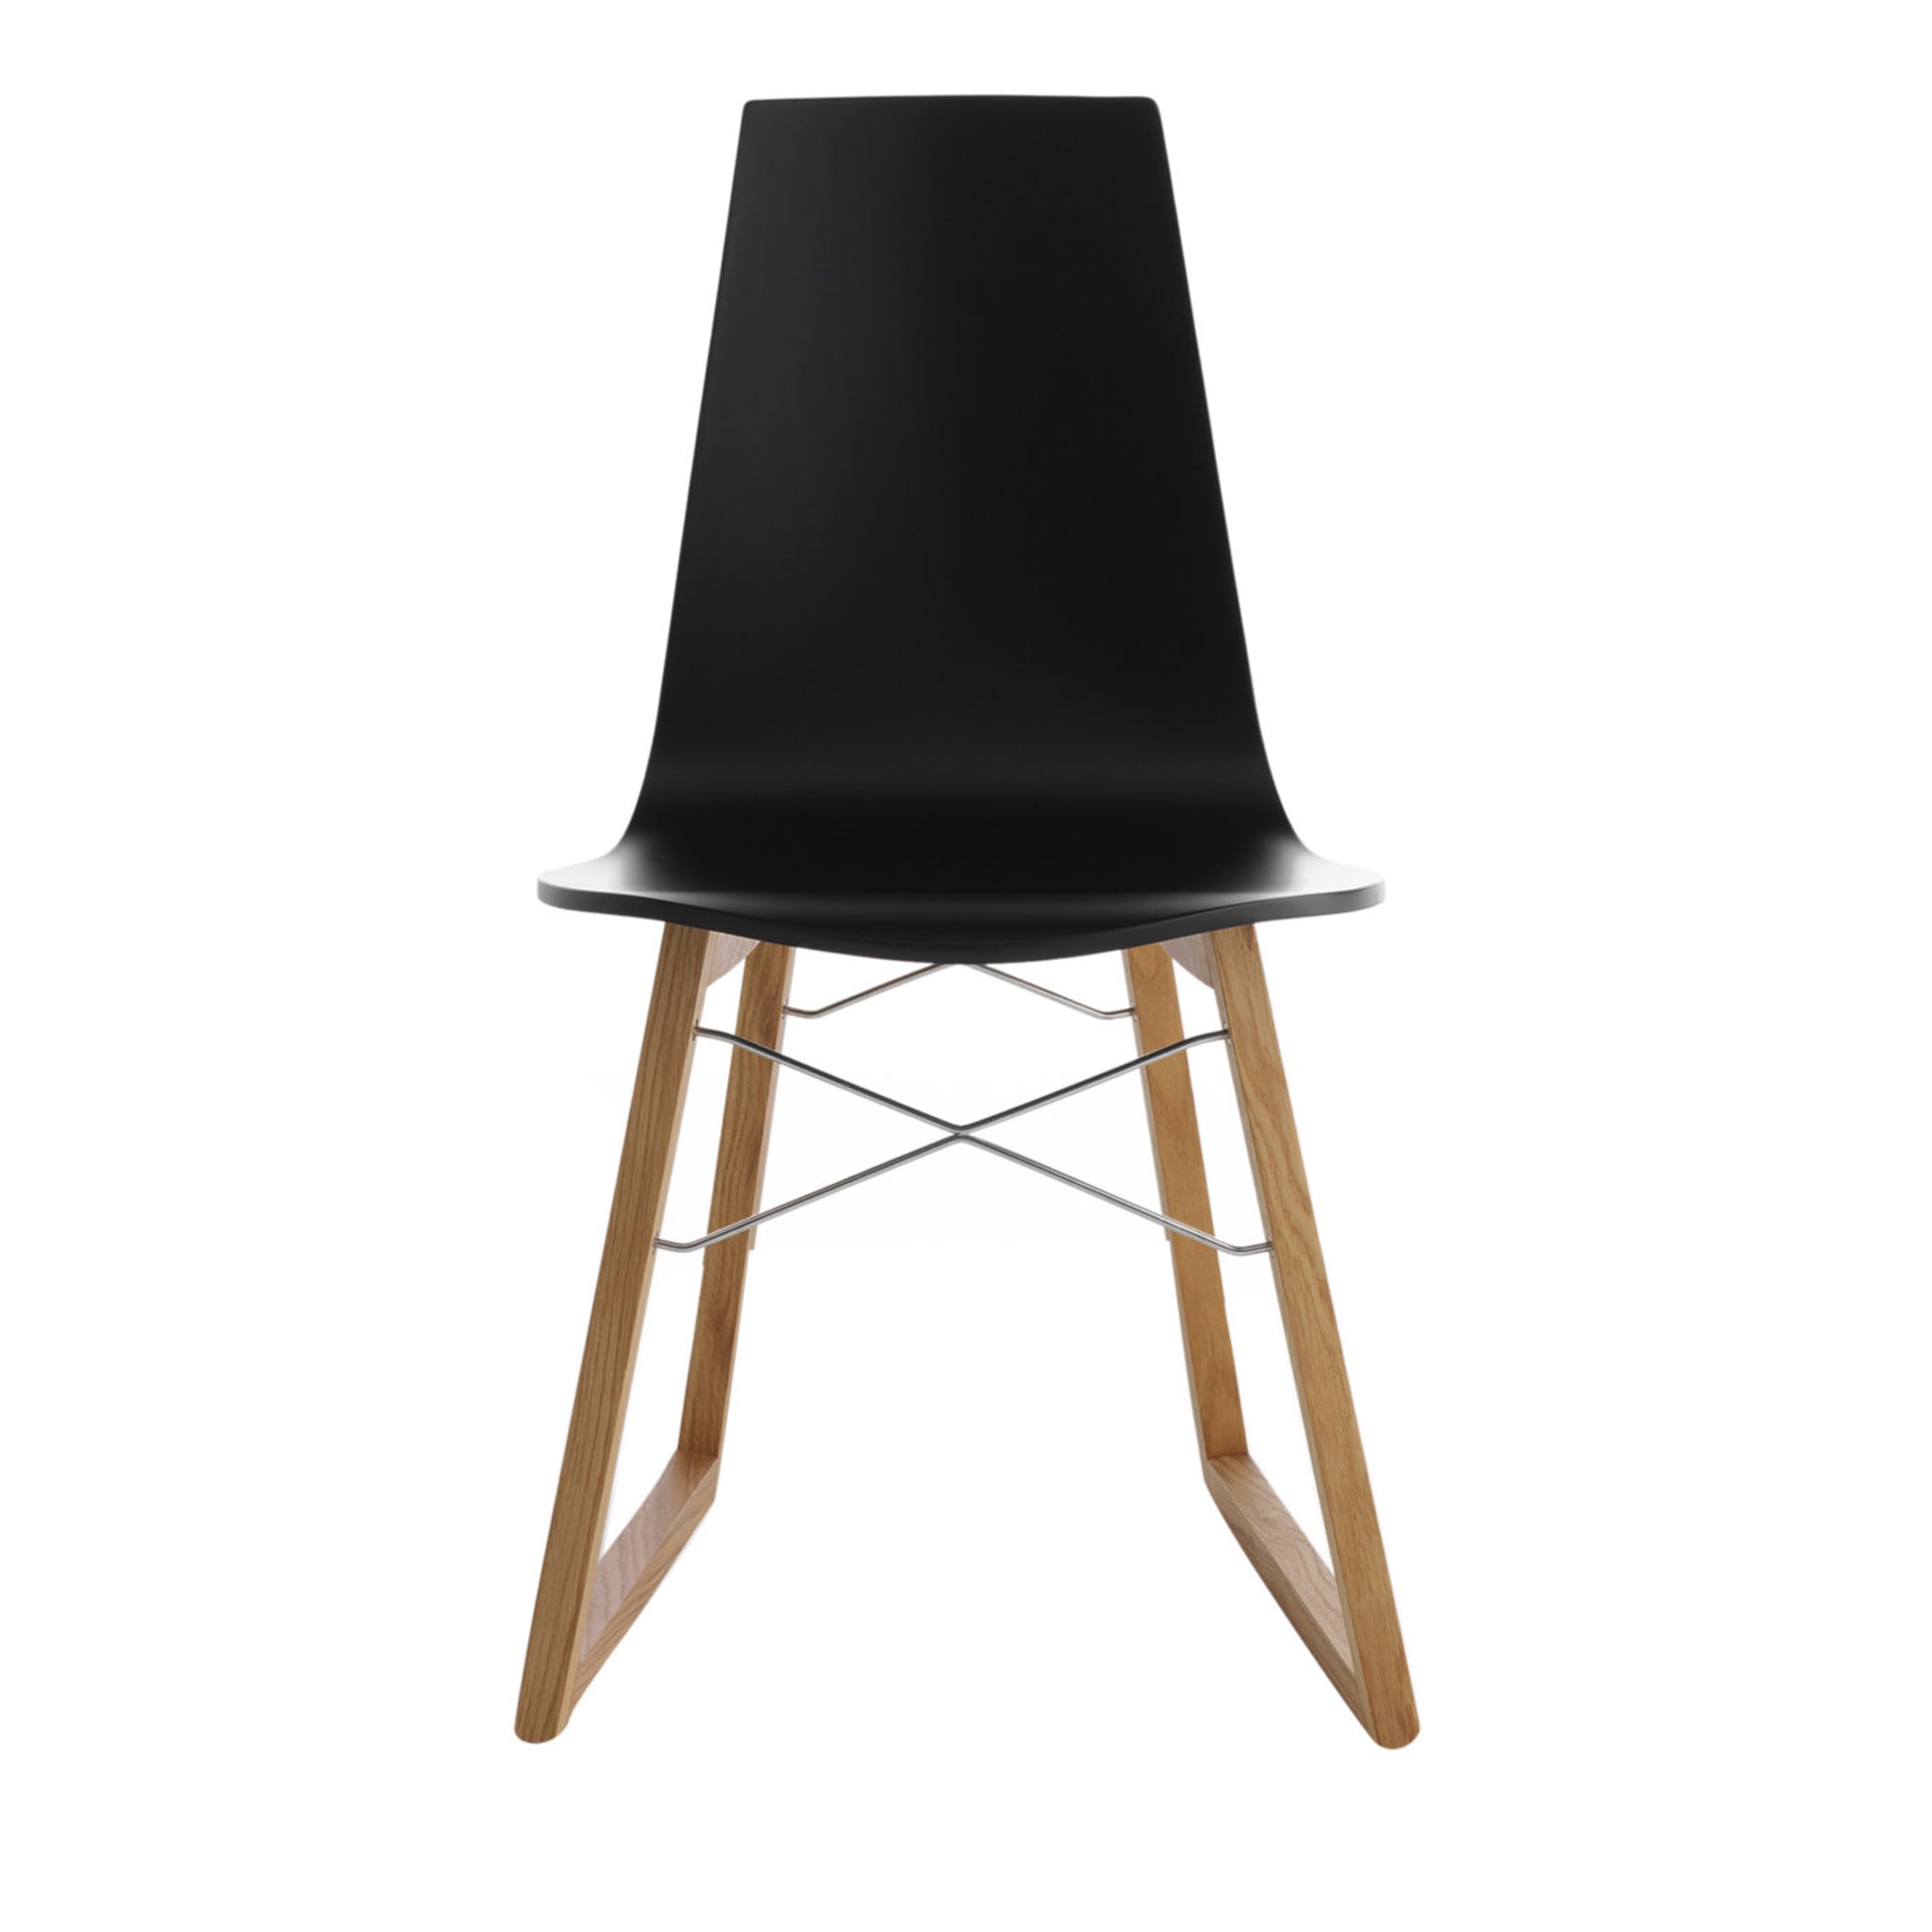 2er set ray schwarzer stühle by Orlandini Design - Hauptansicht